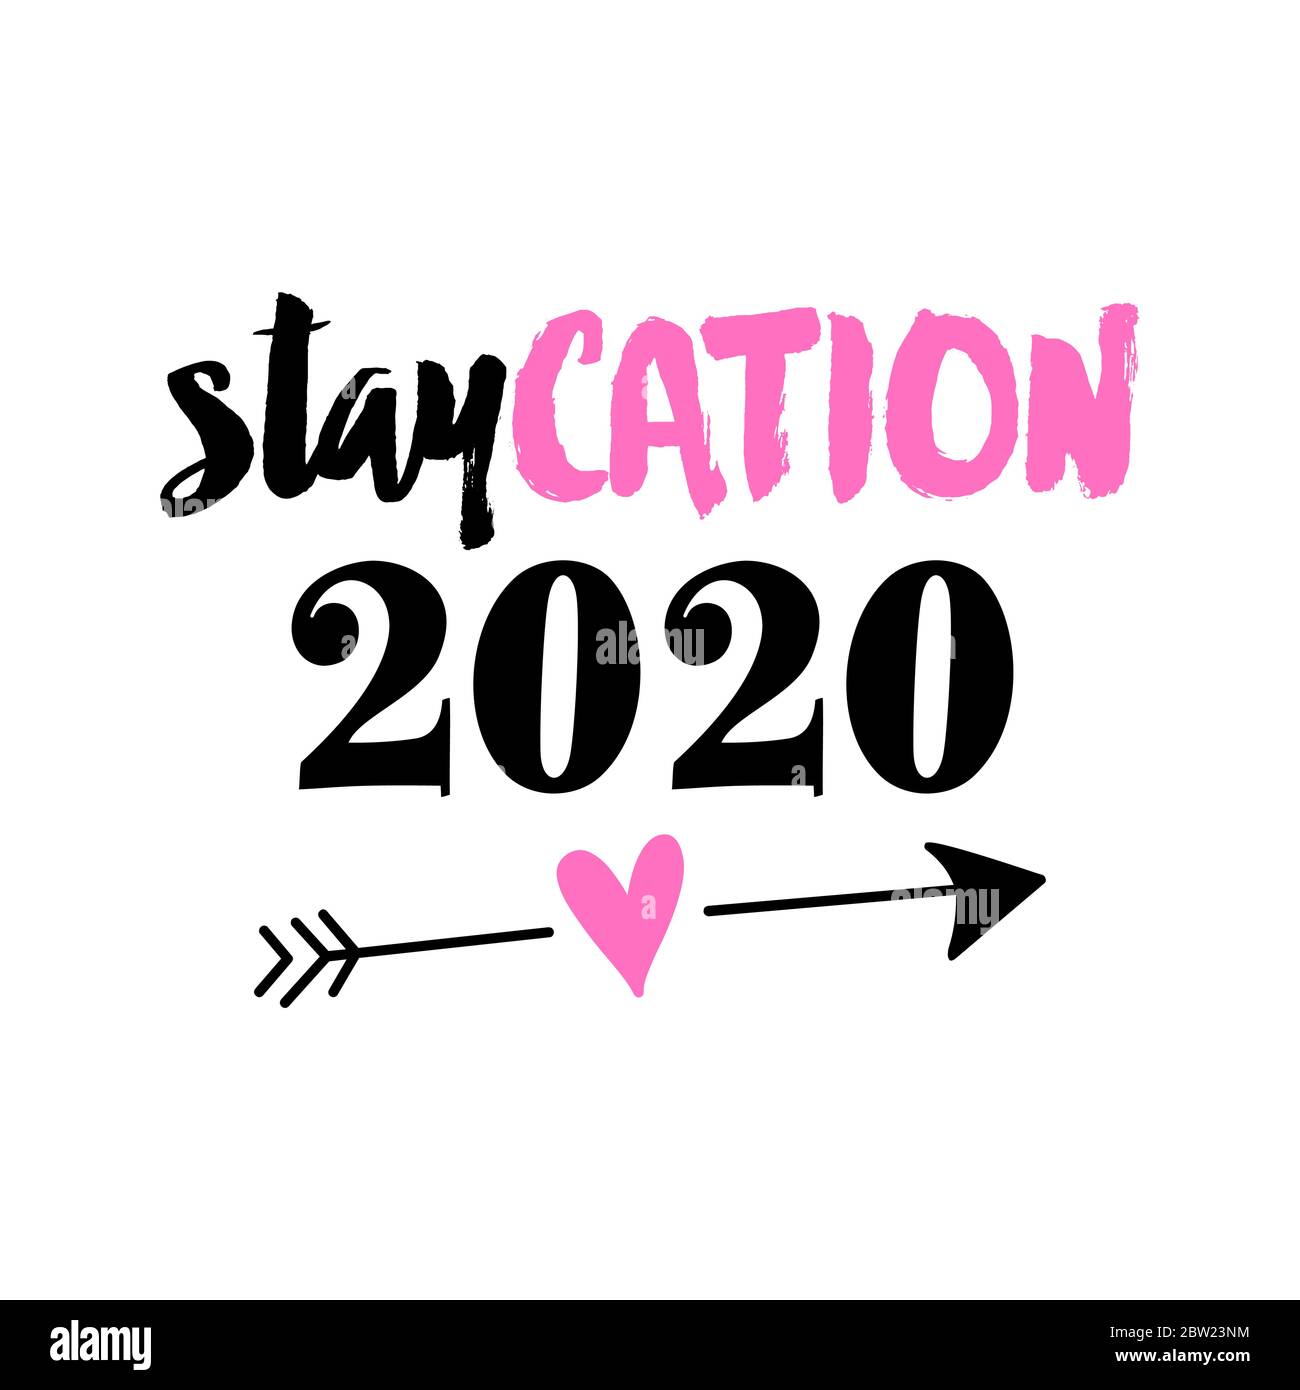 Staycation 2020 - Stay Home Sommerurlaub, Schriftzug Typografie Poster mit Text und Pfeil für die selbst Quarantäne Zeiten. Handbrief Skript Motivation Stock Vektor